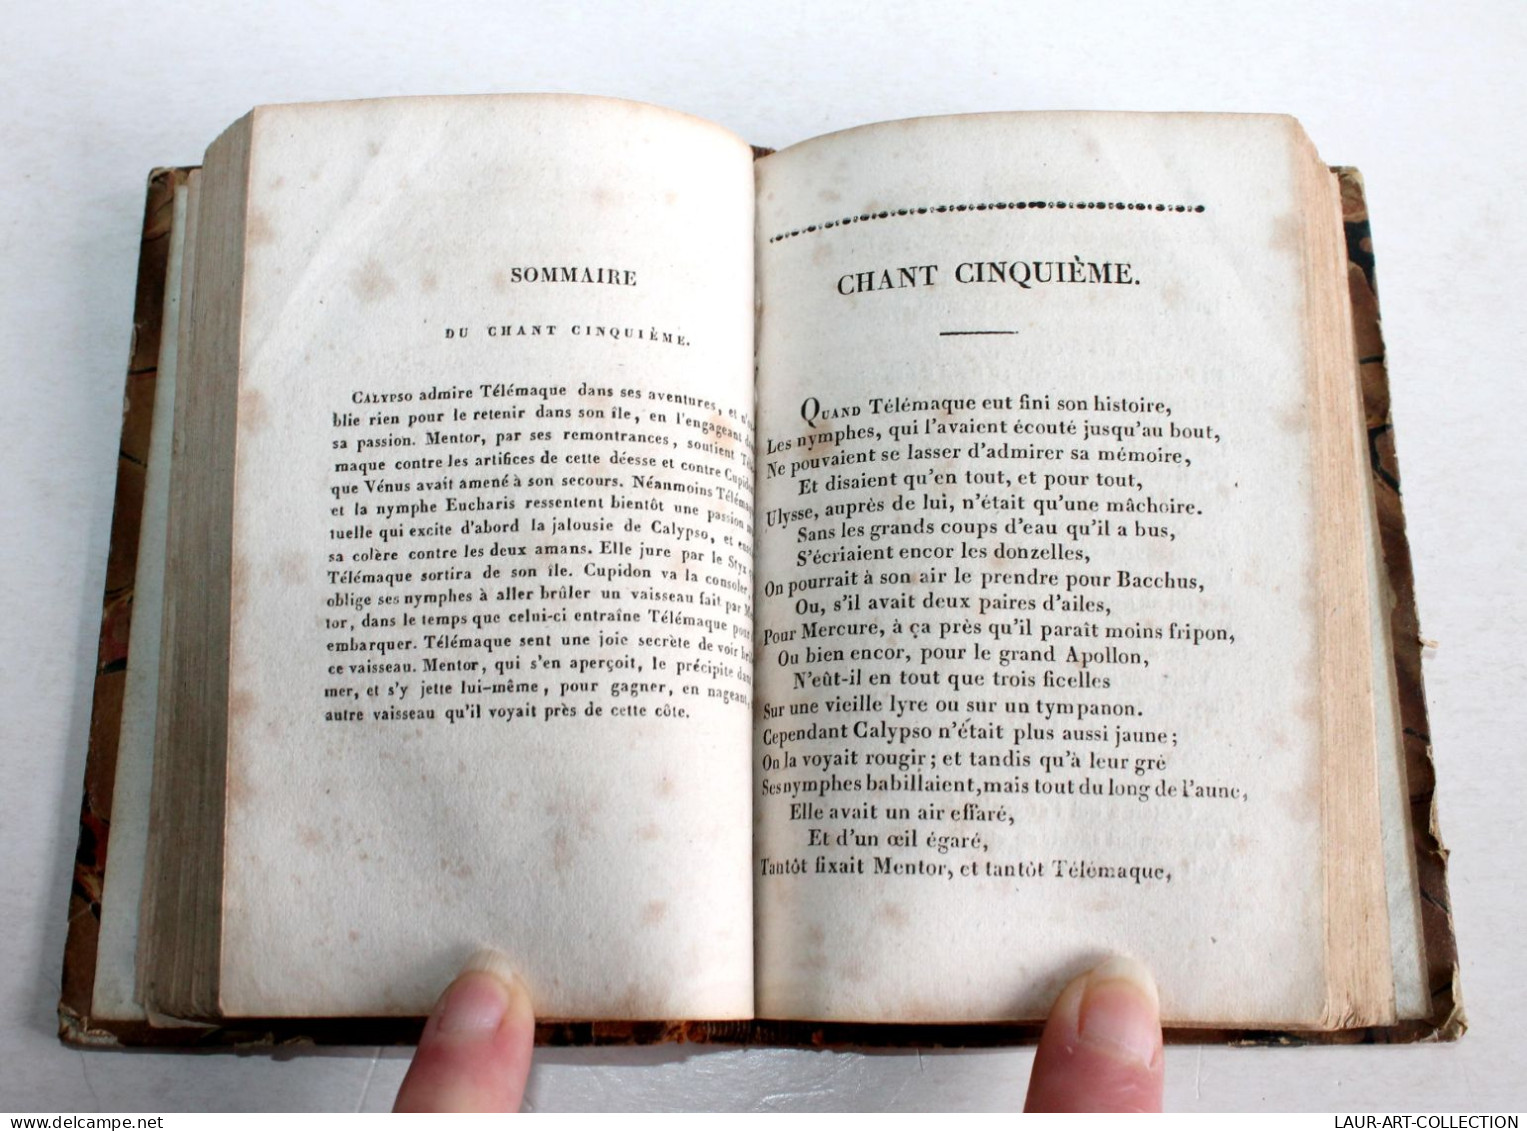 TELEMAQUE TRAVESTI POEME HEROI-COMIQUE EN VERS LIBRE Par PARIGOT 3e EDITION 1825 / ANCIEN LIVRE XIXe SIECLE (1803.129) - French Authors